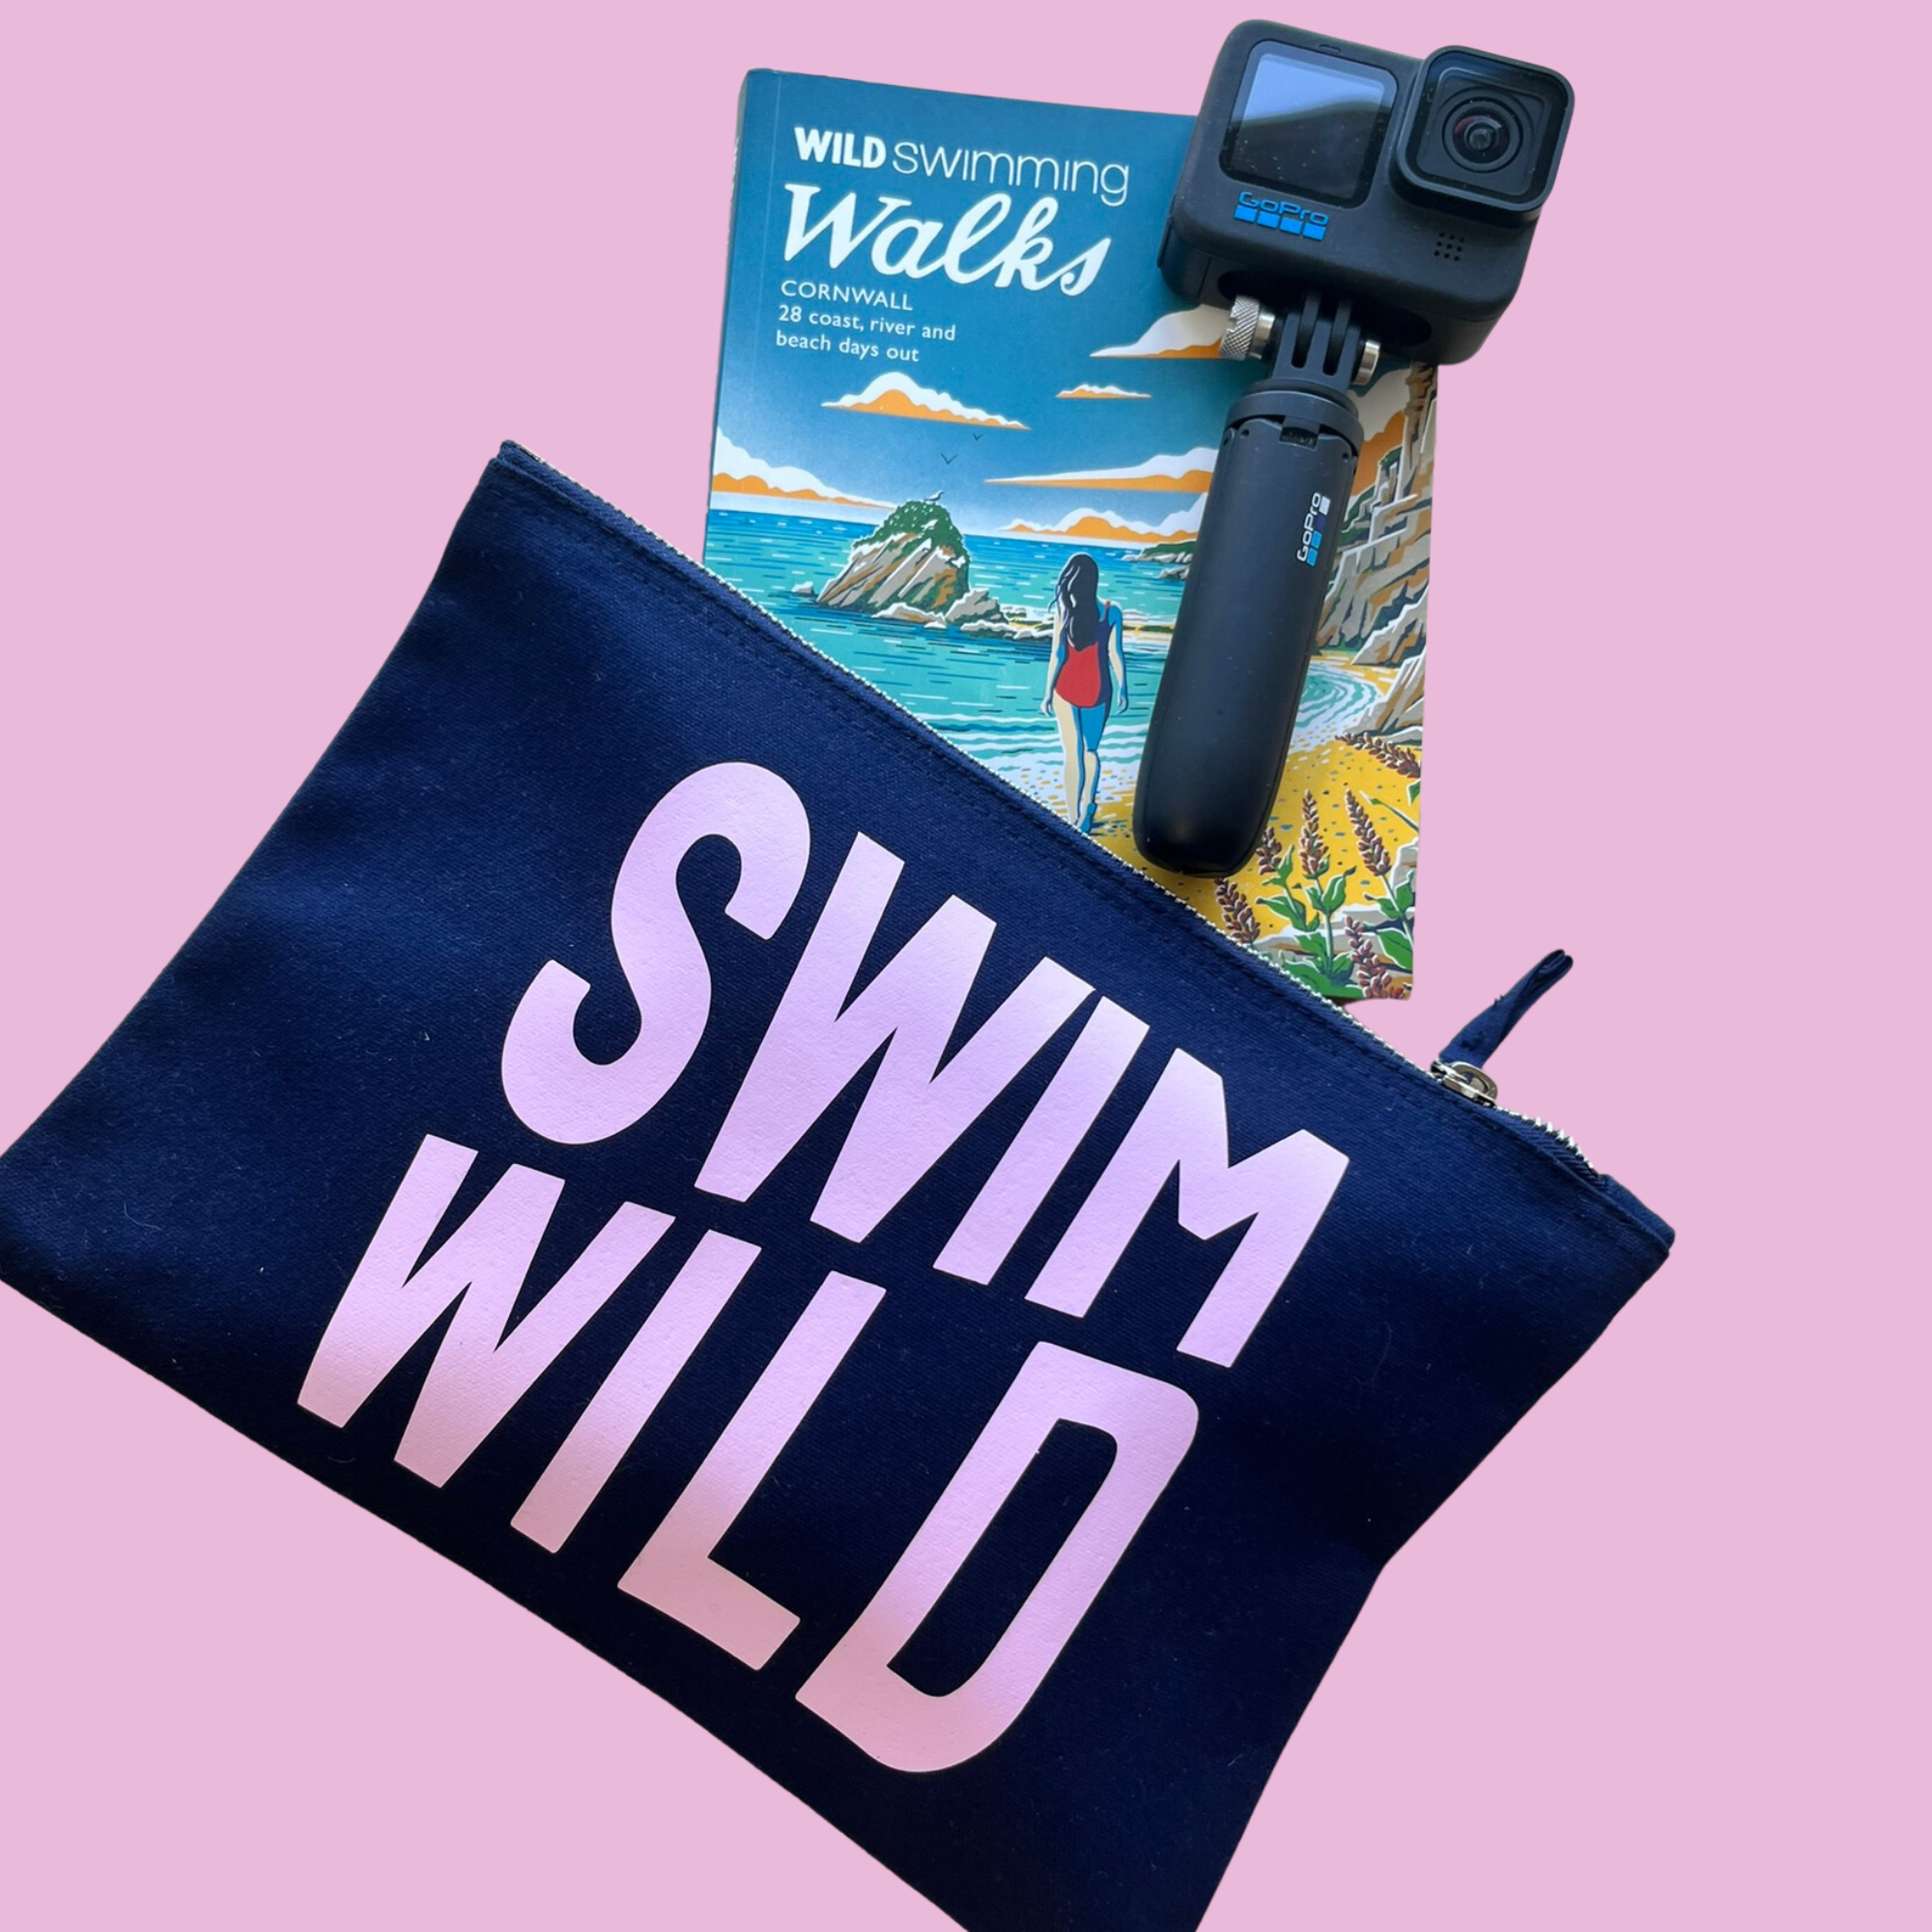 Swim Wild ZIP Bag | Navy / Pink